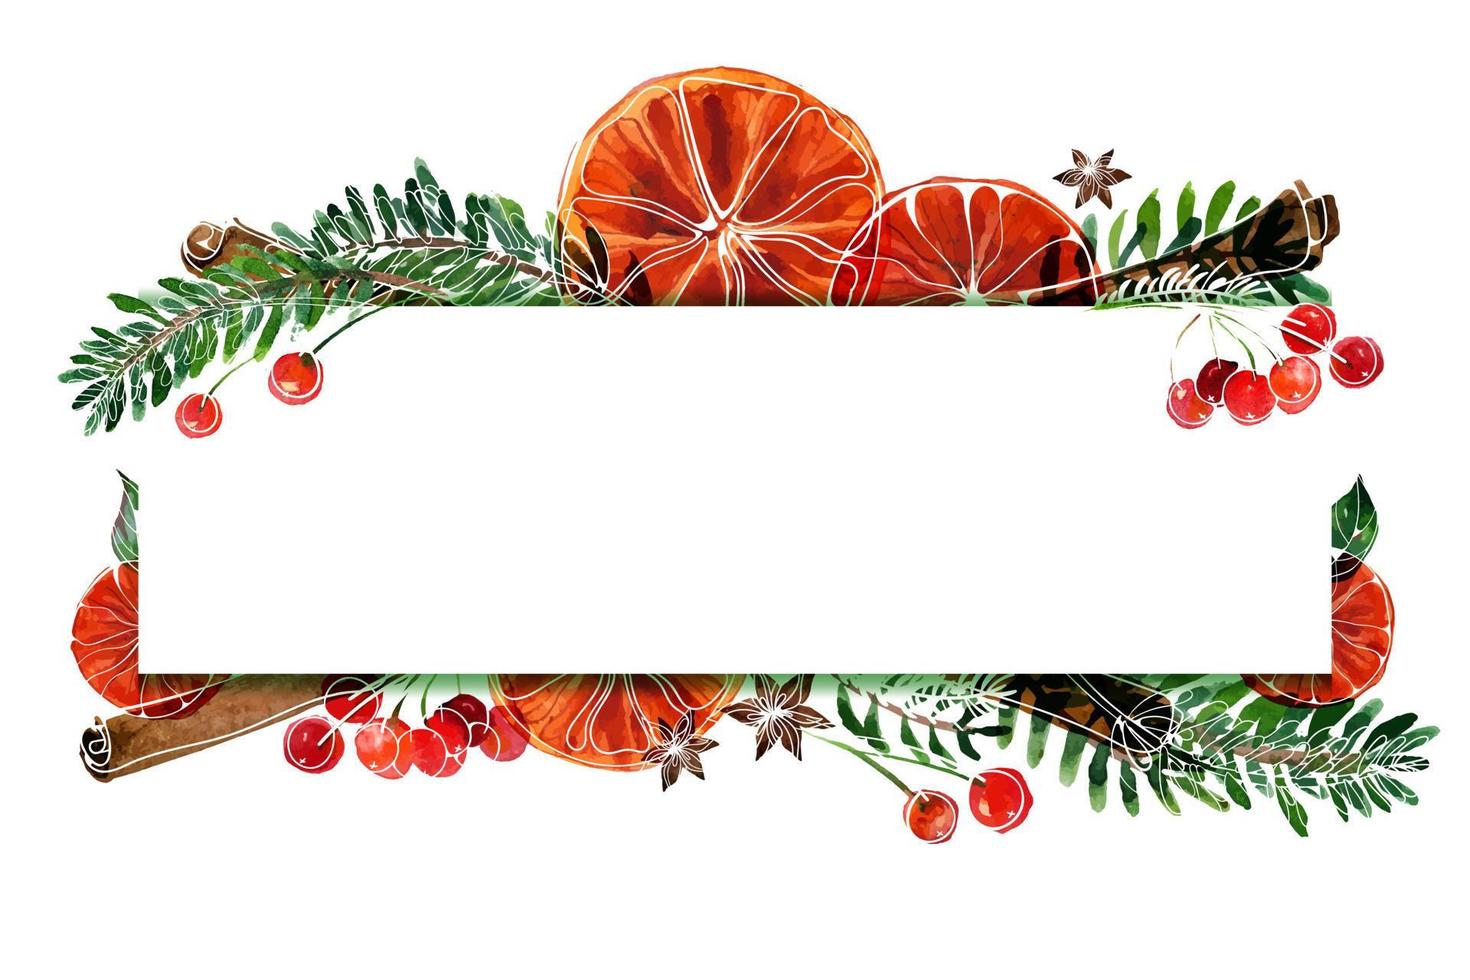 Weihnachtsaquarellrahmen mit Tannenbaum und Orangen und Zimt und Anis und roten Beeren. passender Rahmen mit Platz für Text für Weihnachts- und Neujahrsgrußkarten und Partyeinladungen vektor